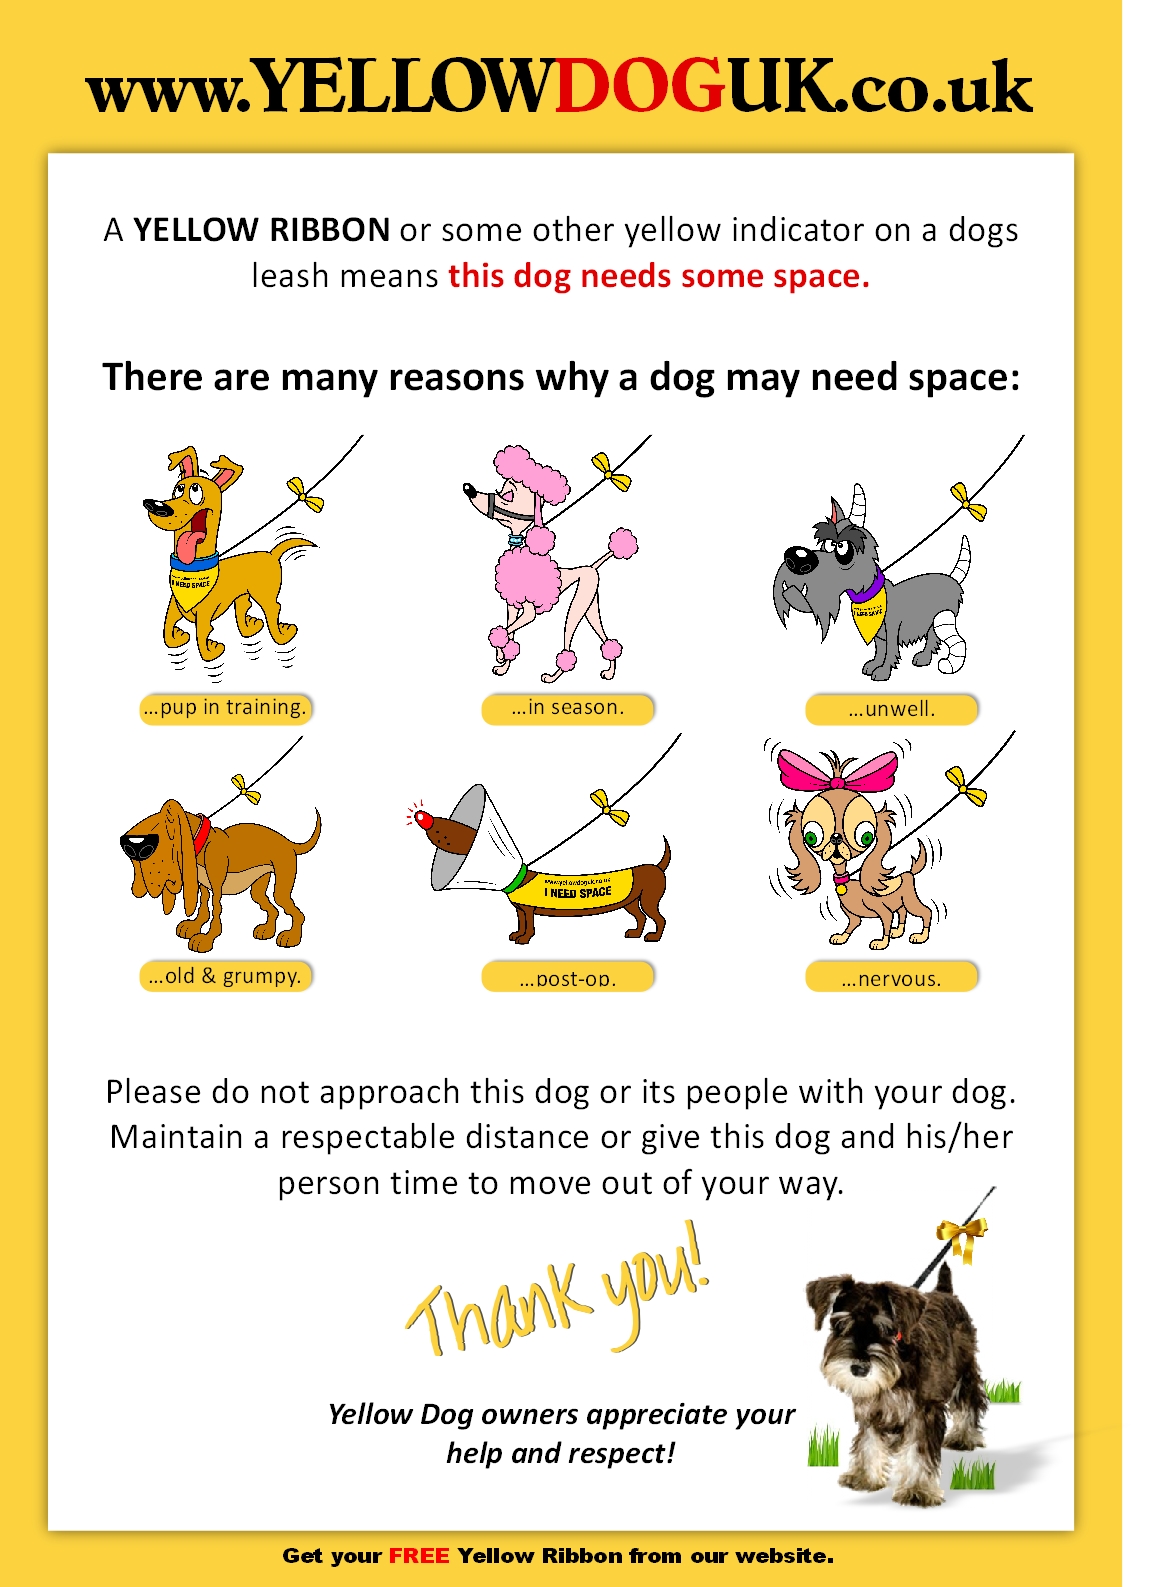 Il progetto Yellow Dog